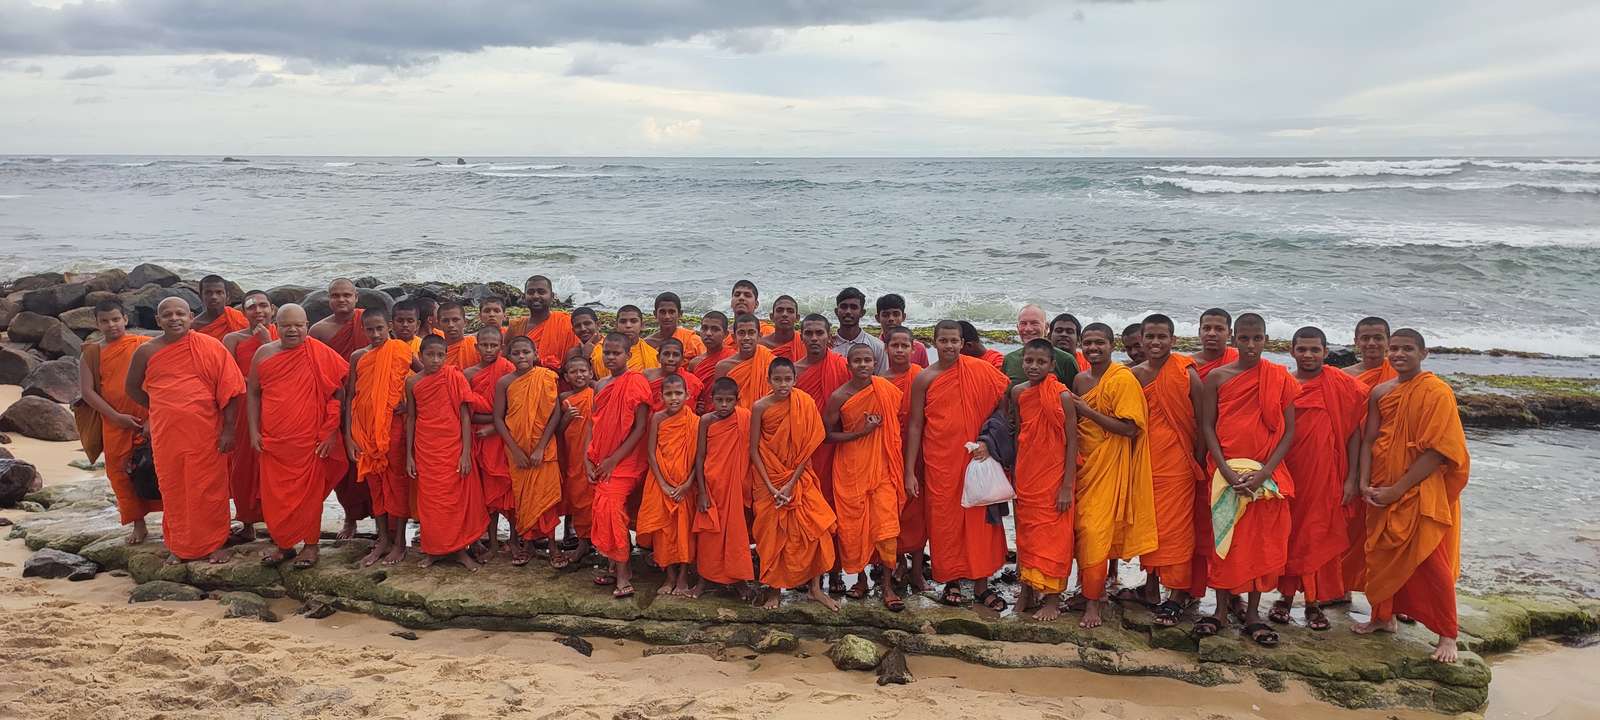 Монахи на пляже онлайн-пазл